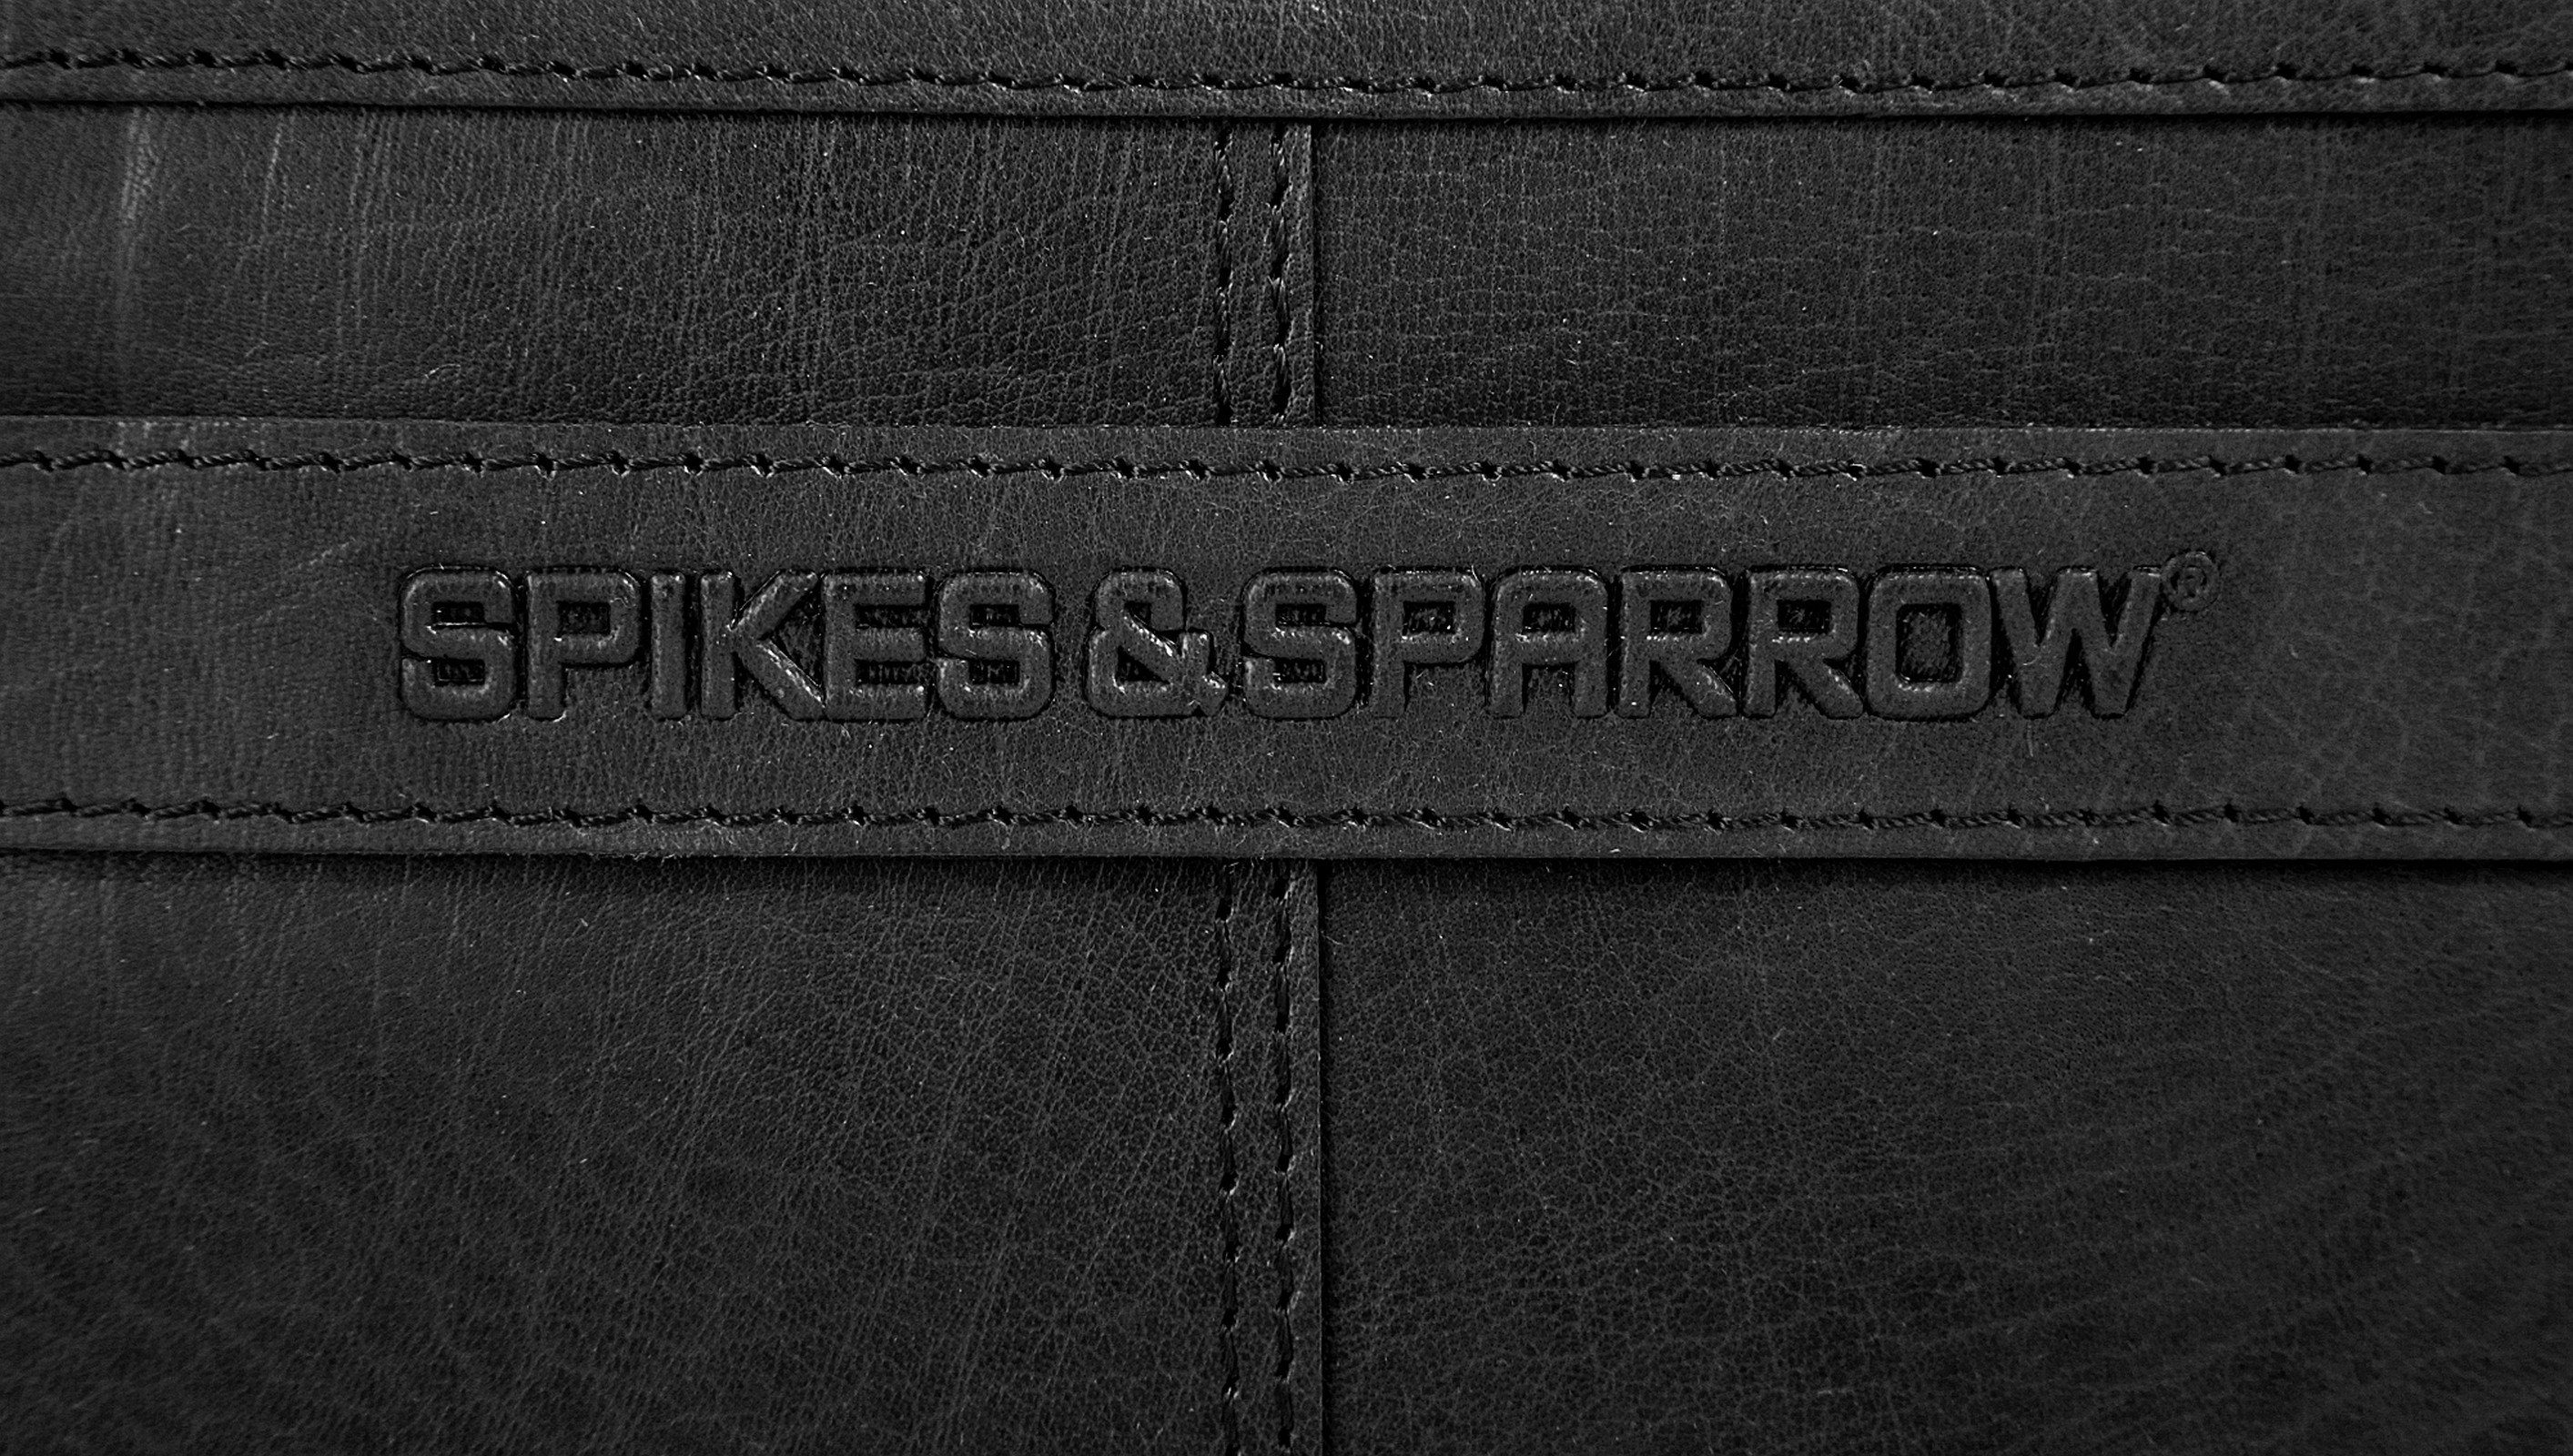 Spikes & Sparrow schwarz echt Leder Aktentasche